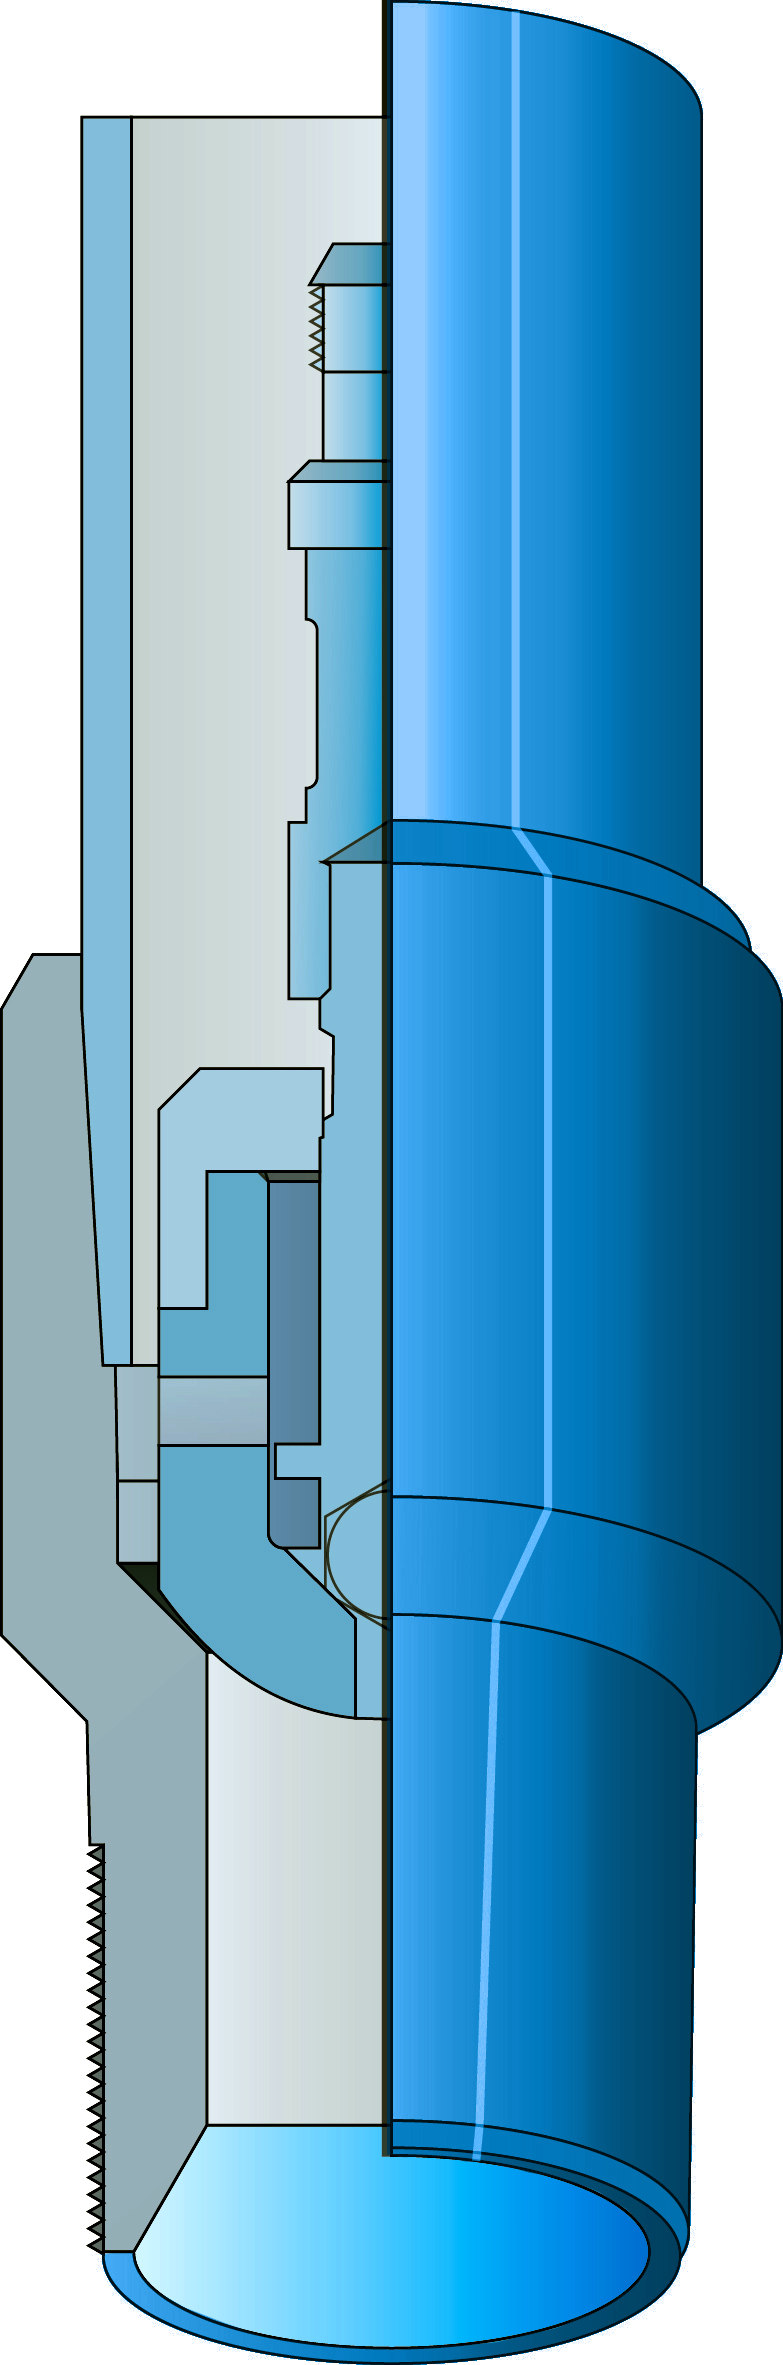 Пробка с клапаном для опрессовки насосно-компрессорных труб типа ПКО